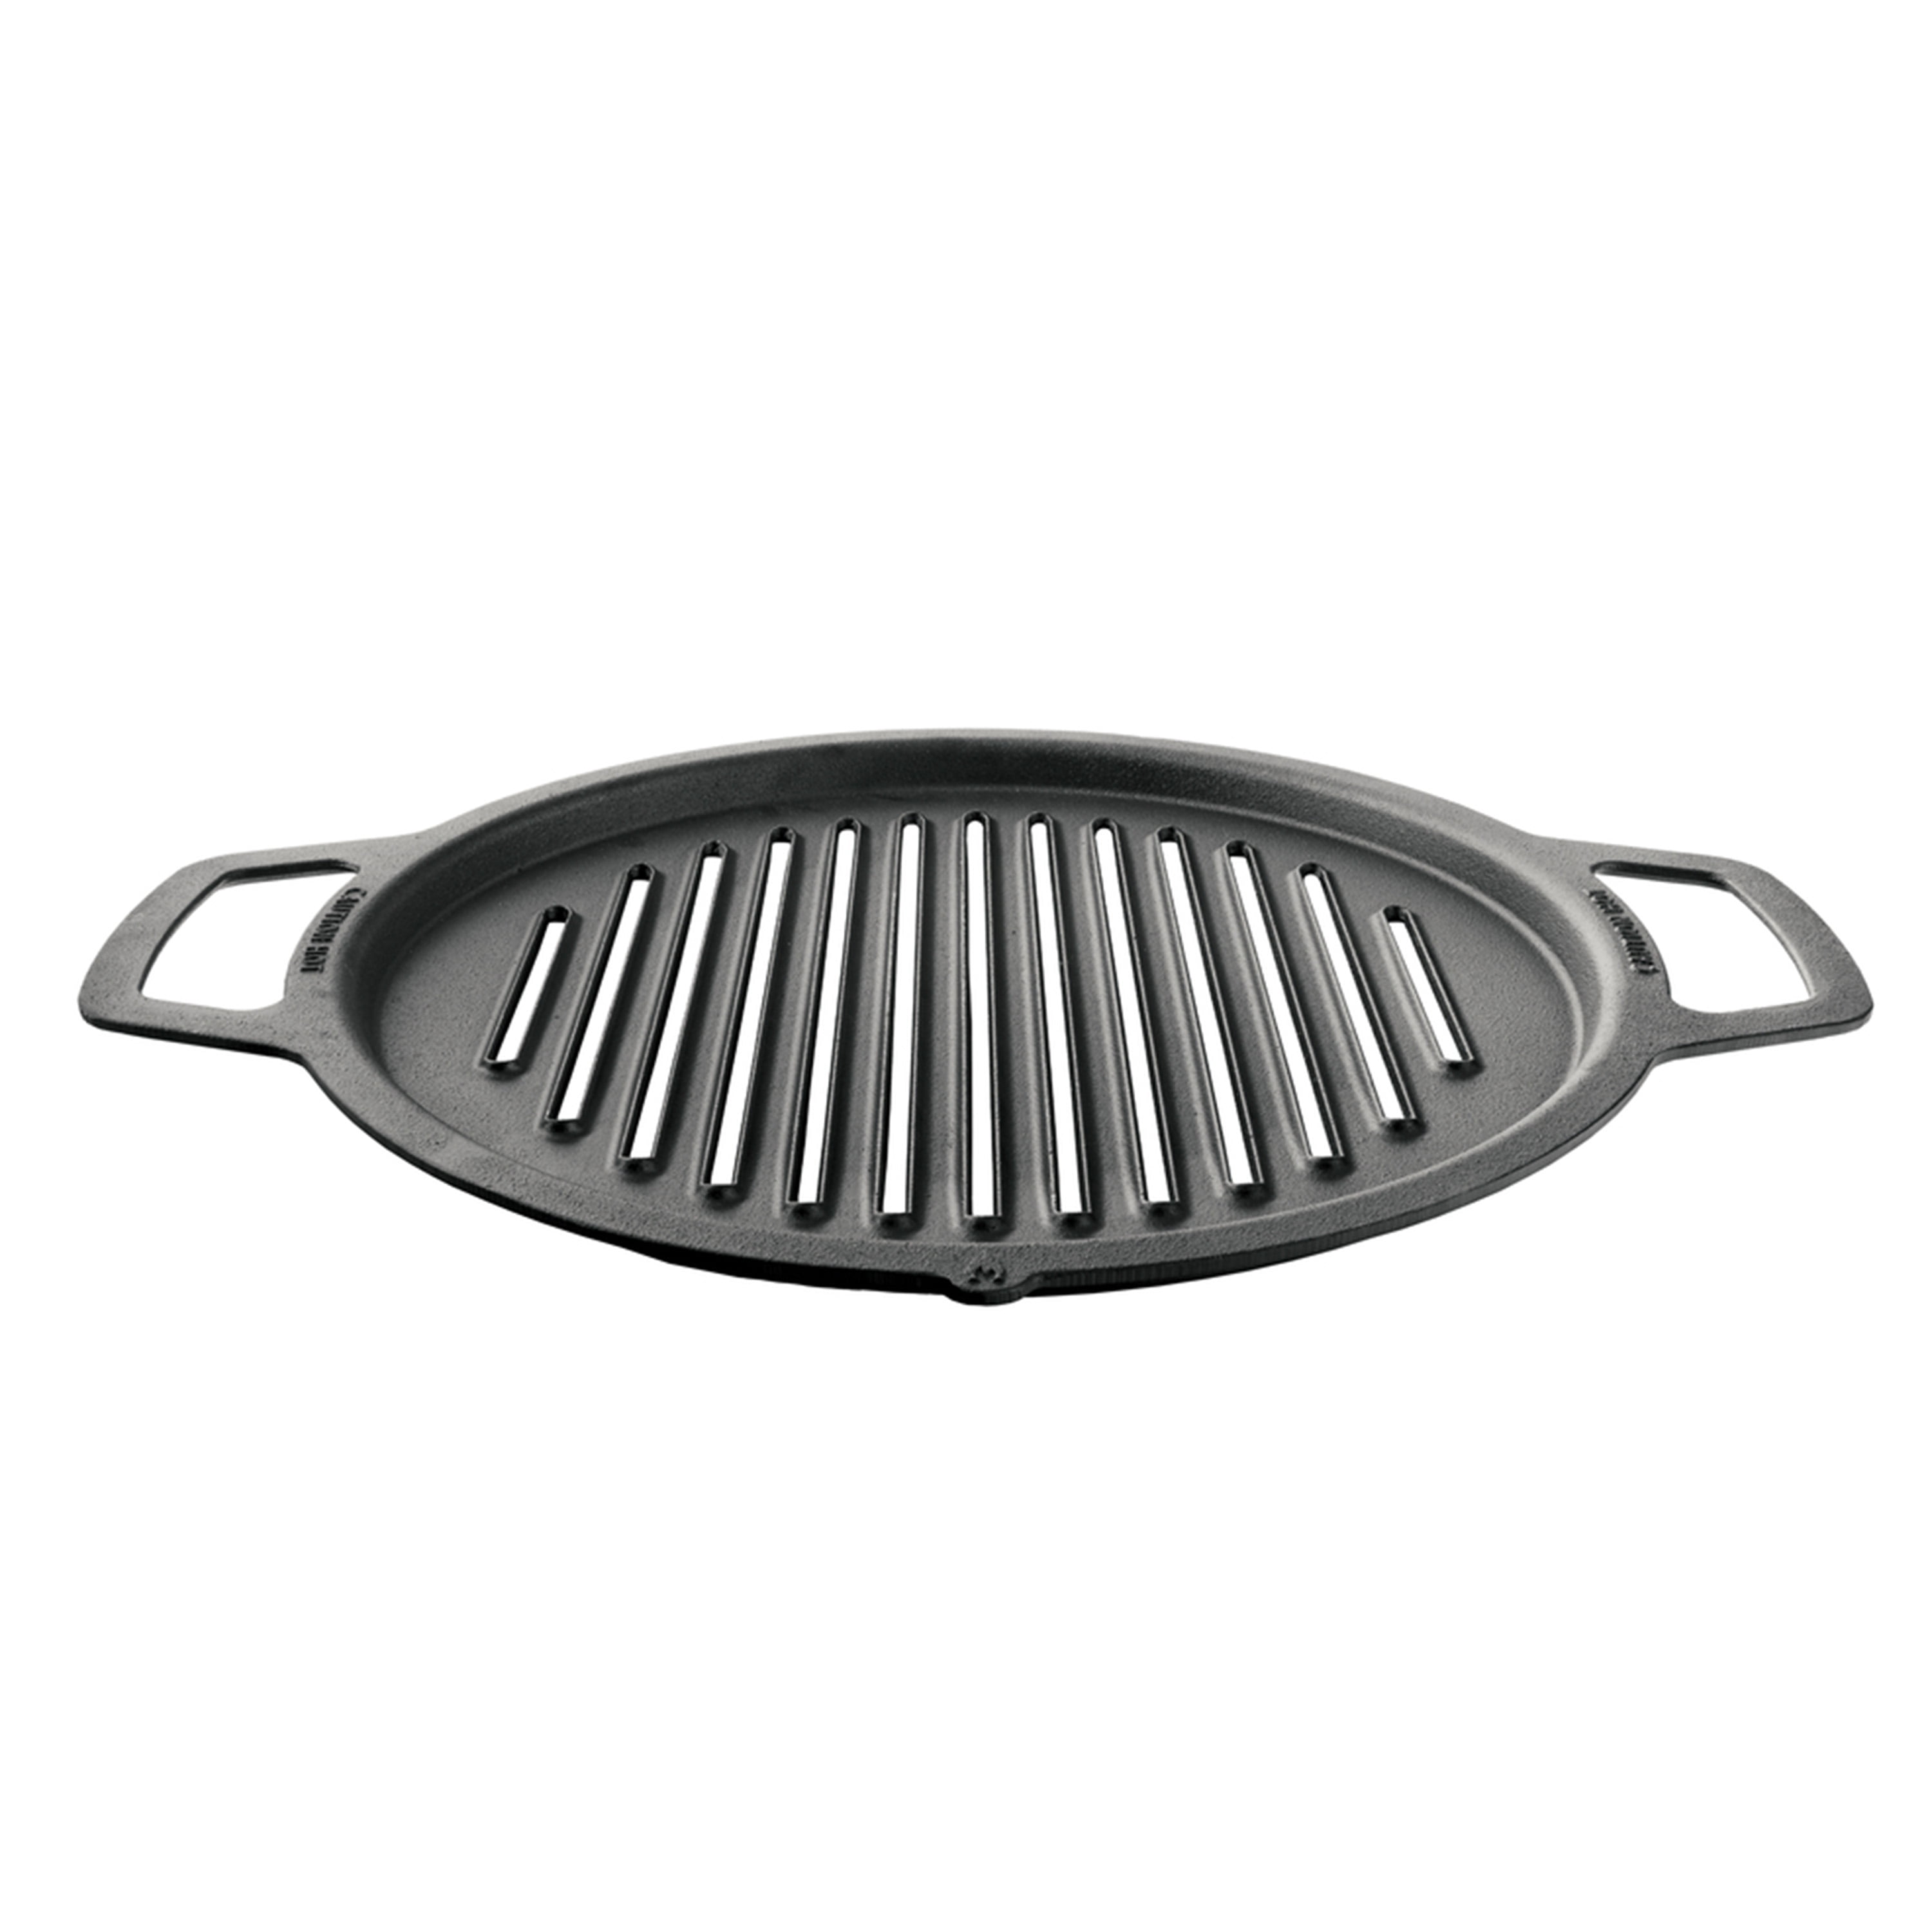 Hybrid BBQ Grill Pan